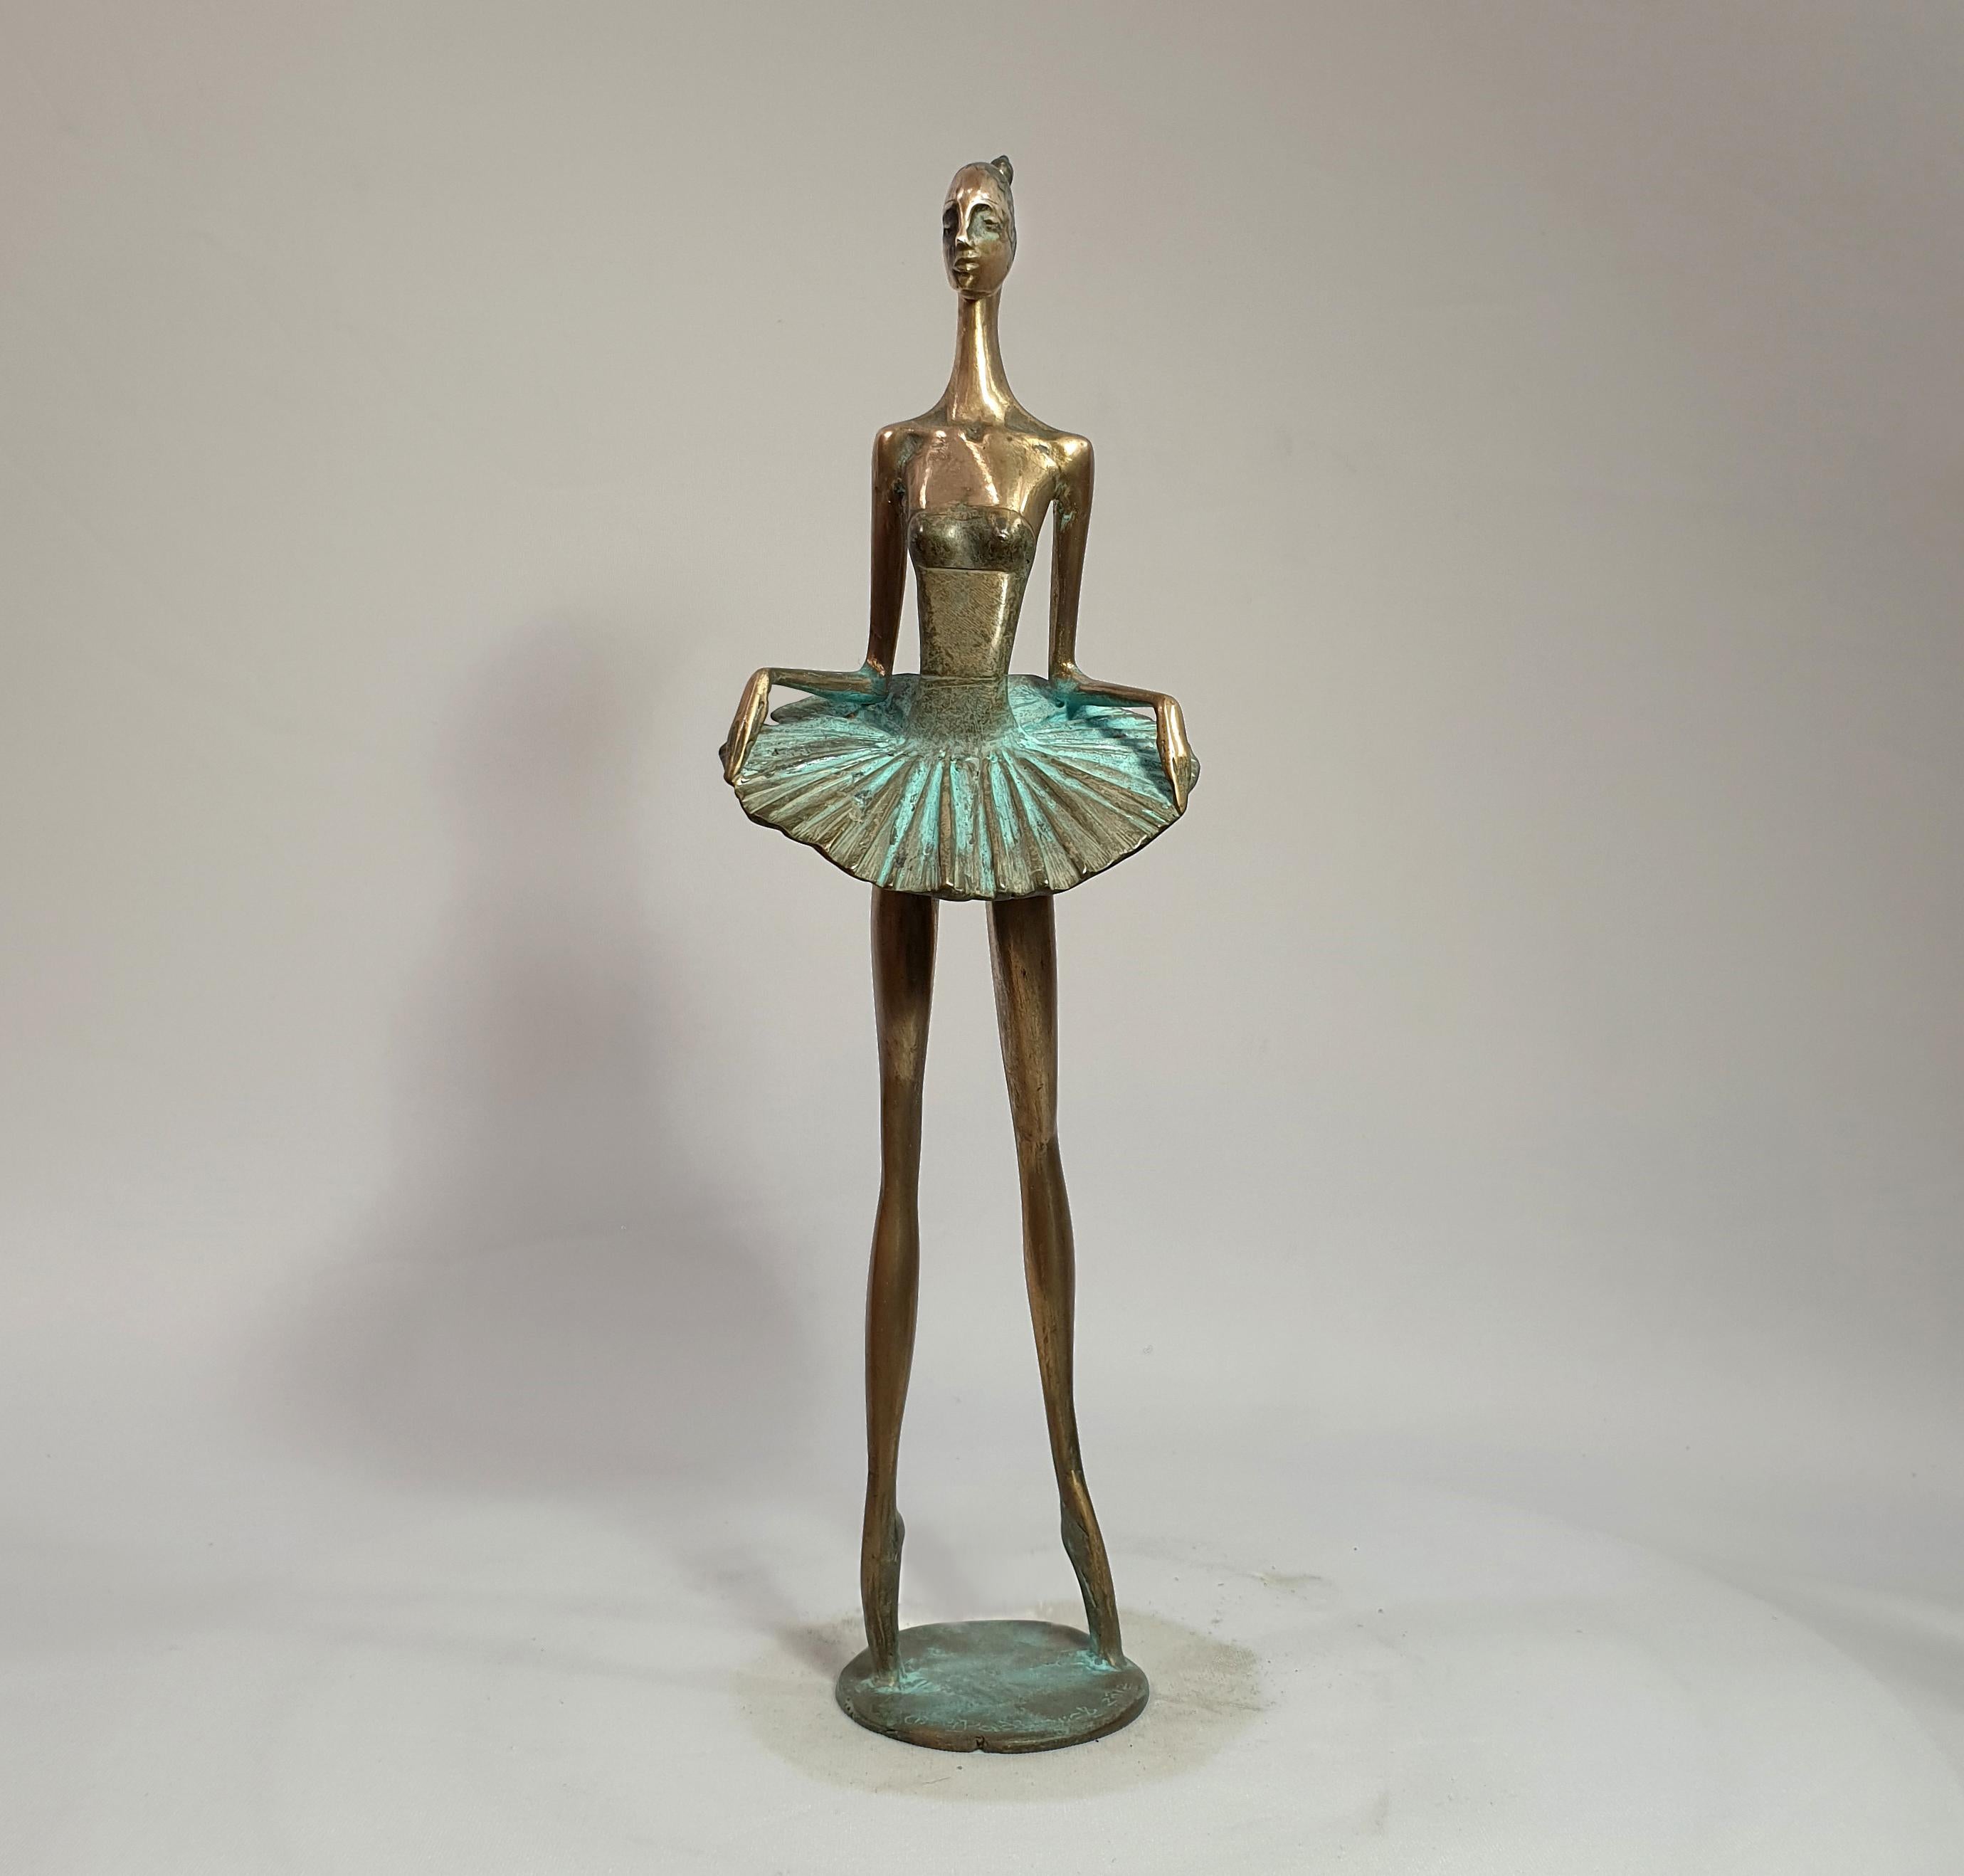 Stehende Ballerina – Sculpture von Alex Radionov